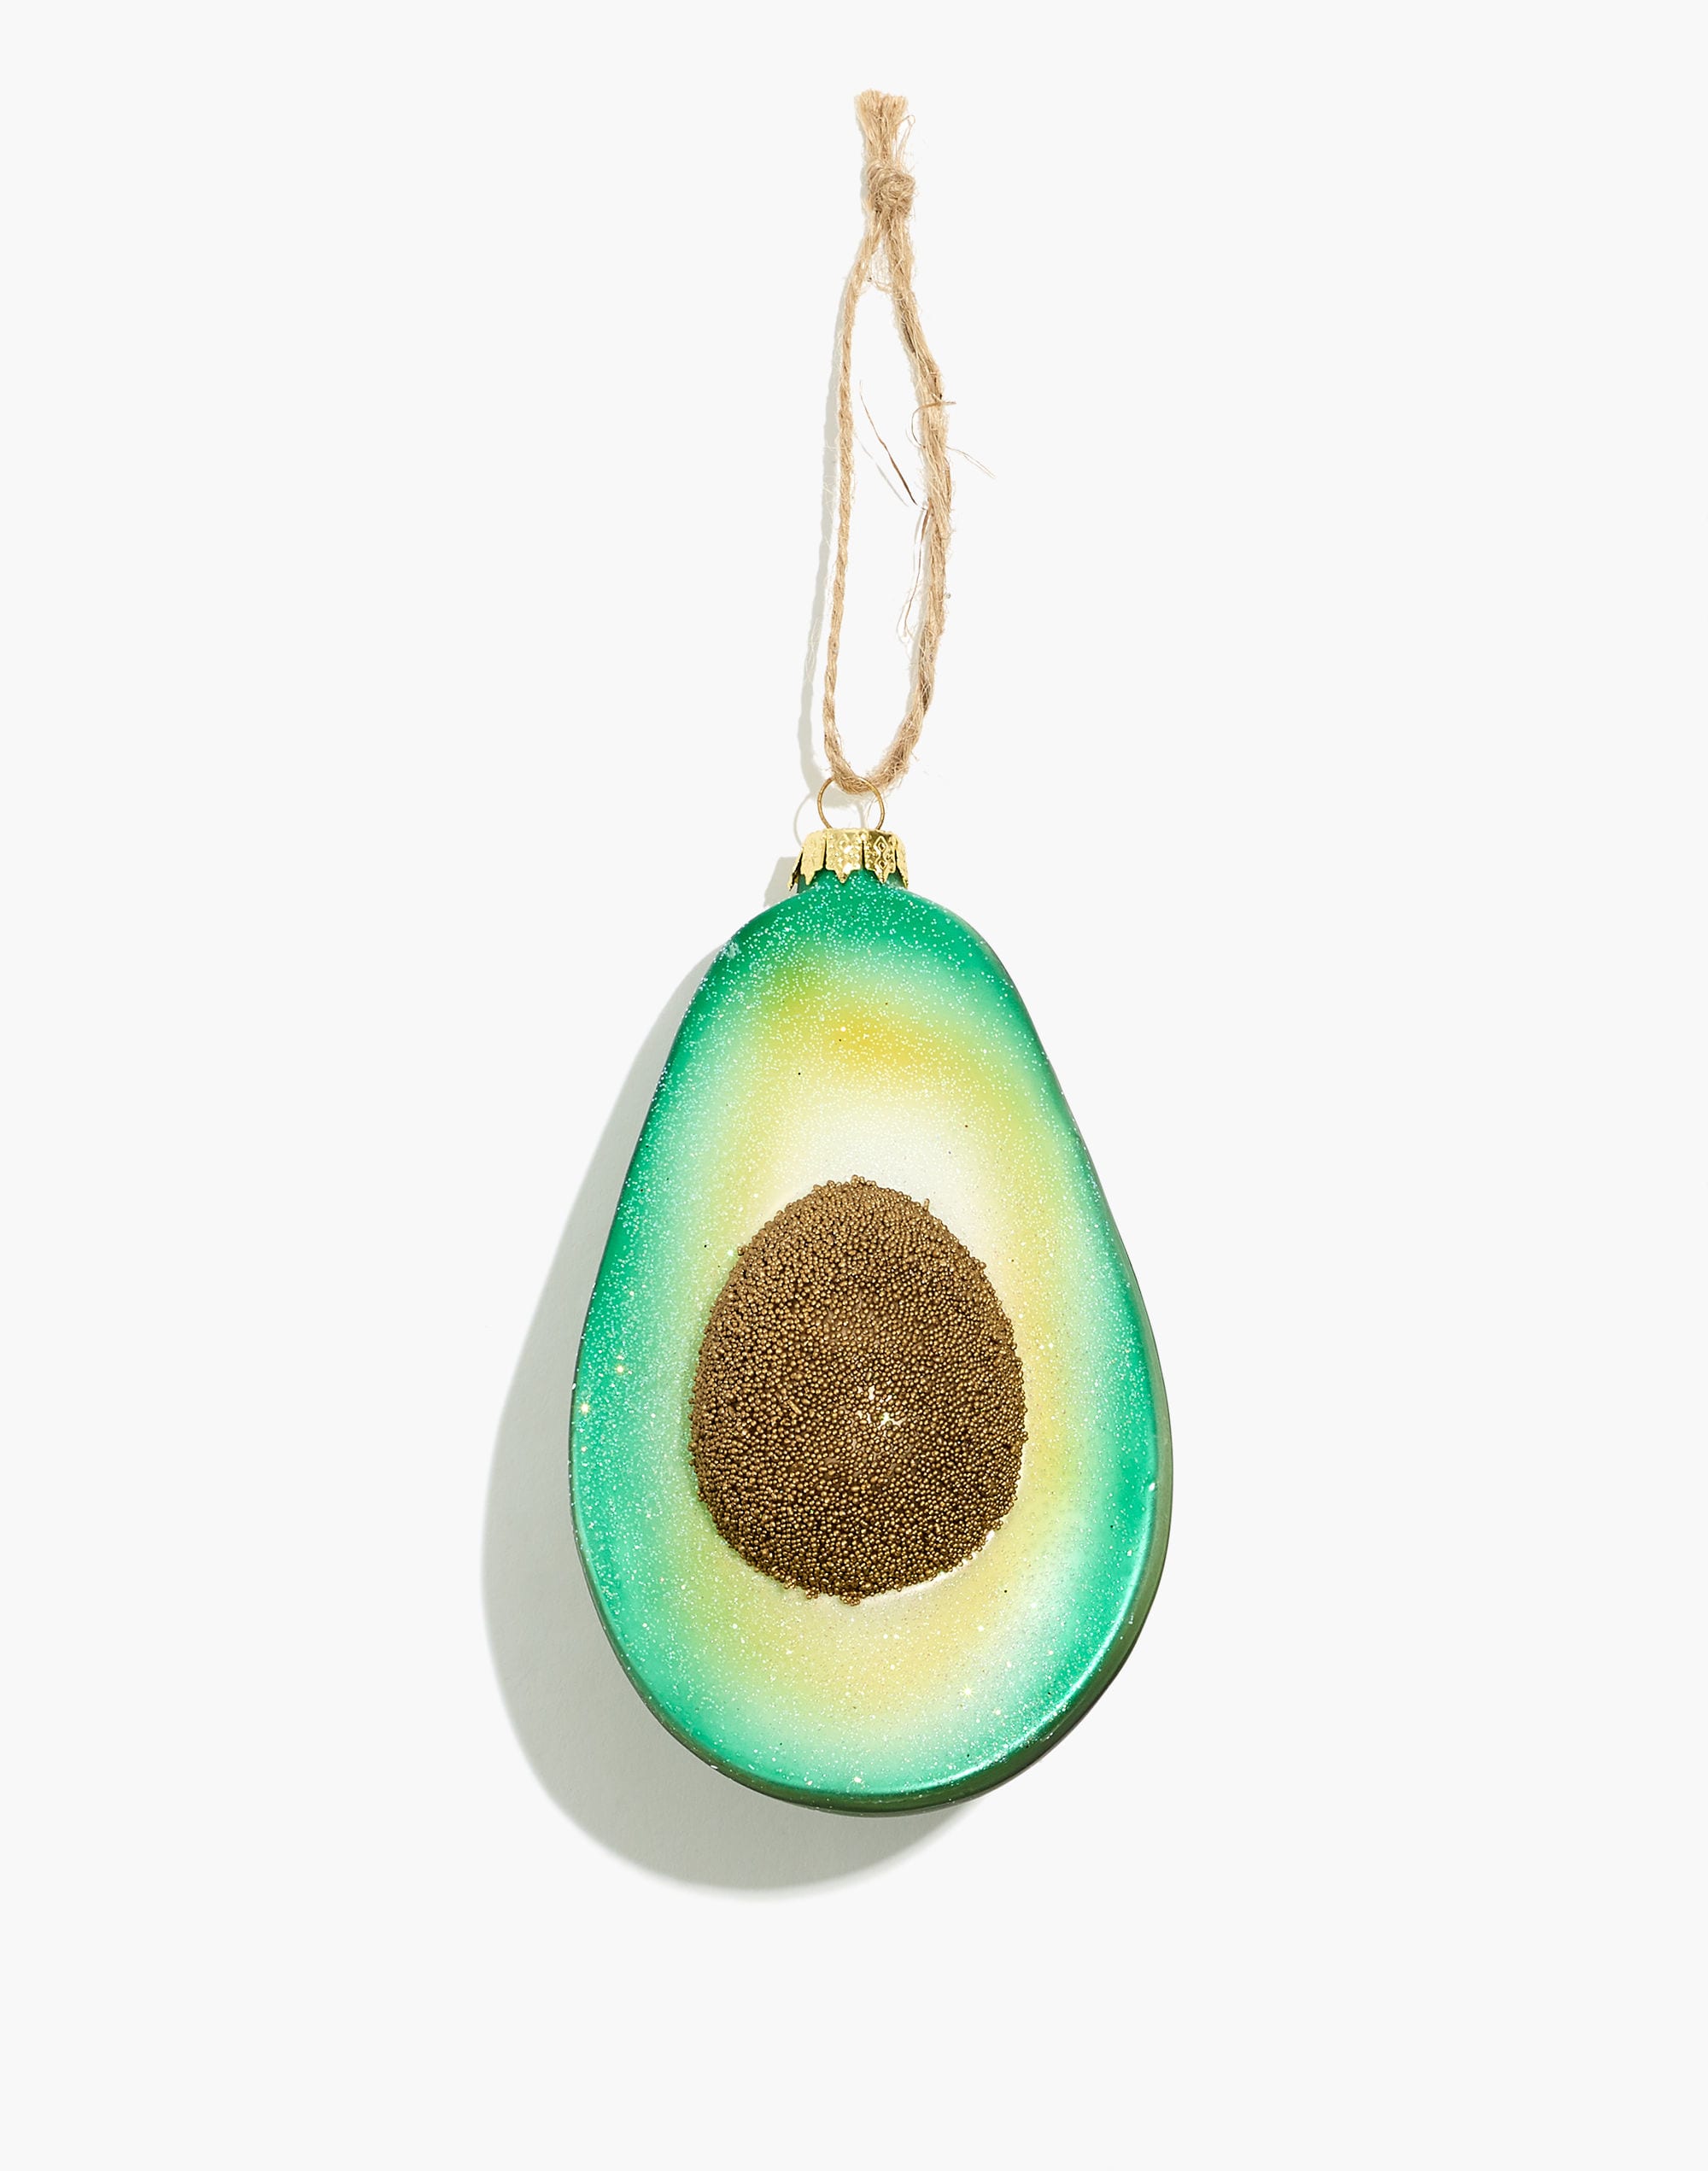 Mw Cody Foster&trade; Glass Avocado Ornament